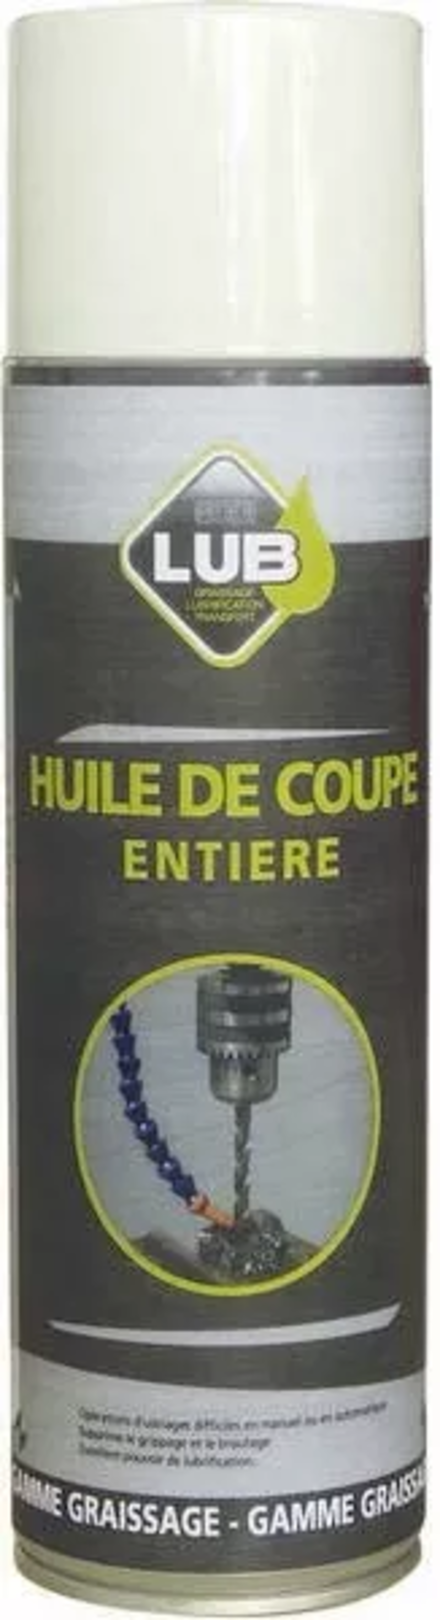 HUILE DE COUPE ENTIERE 400ML - 10050